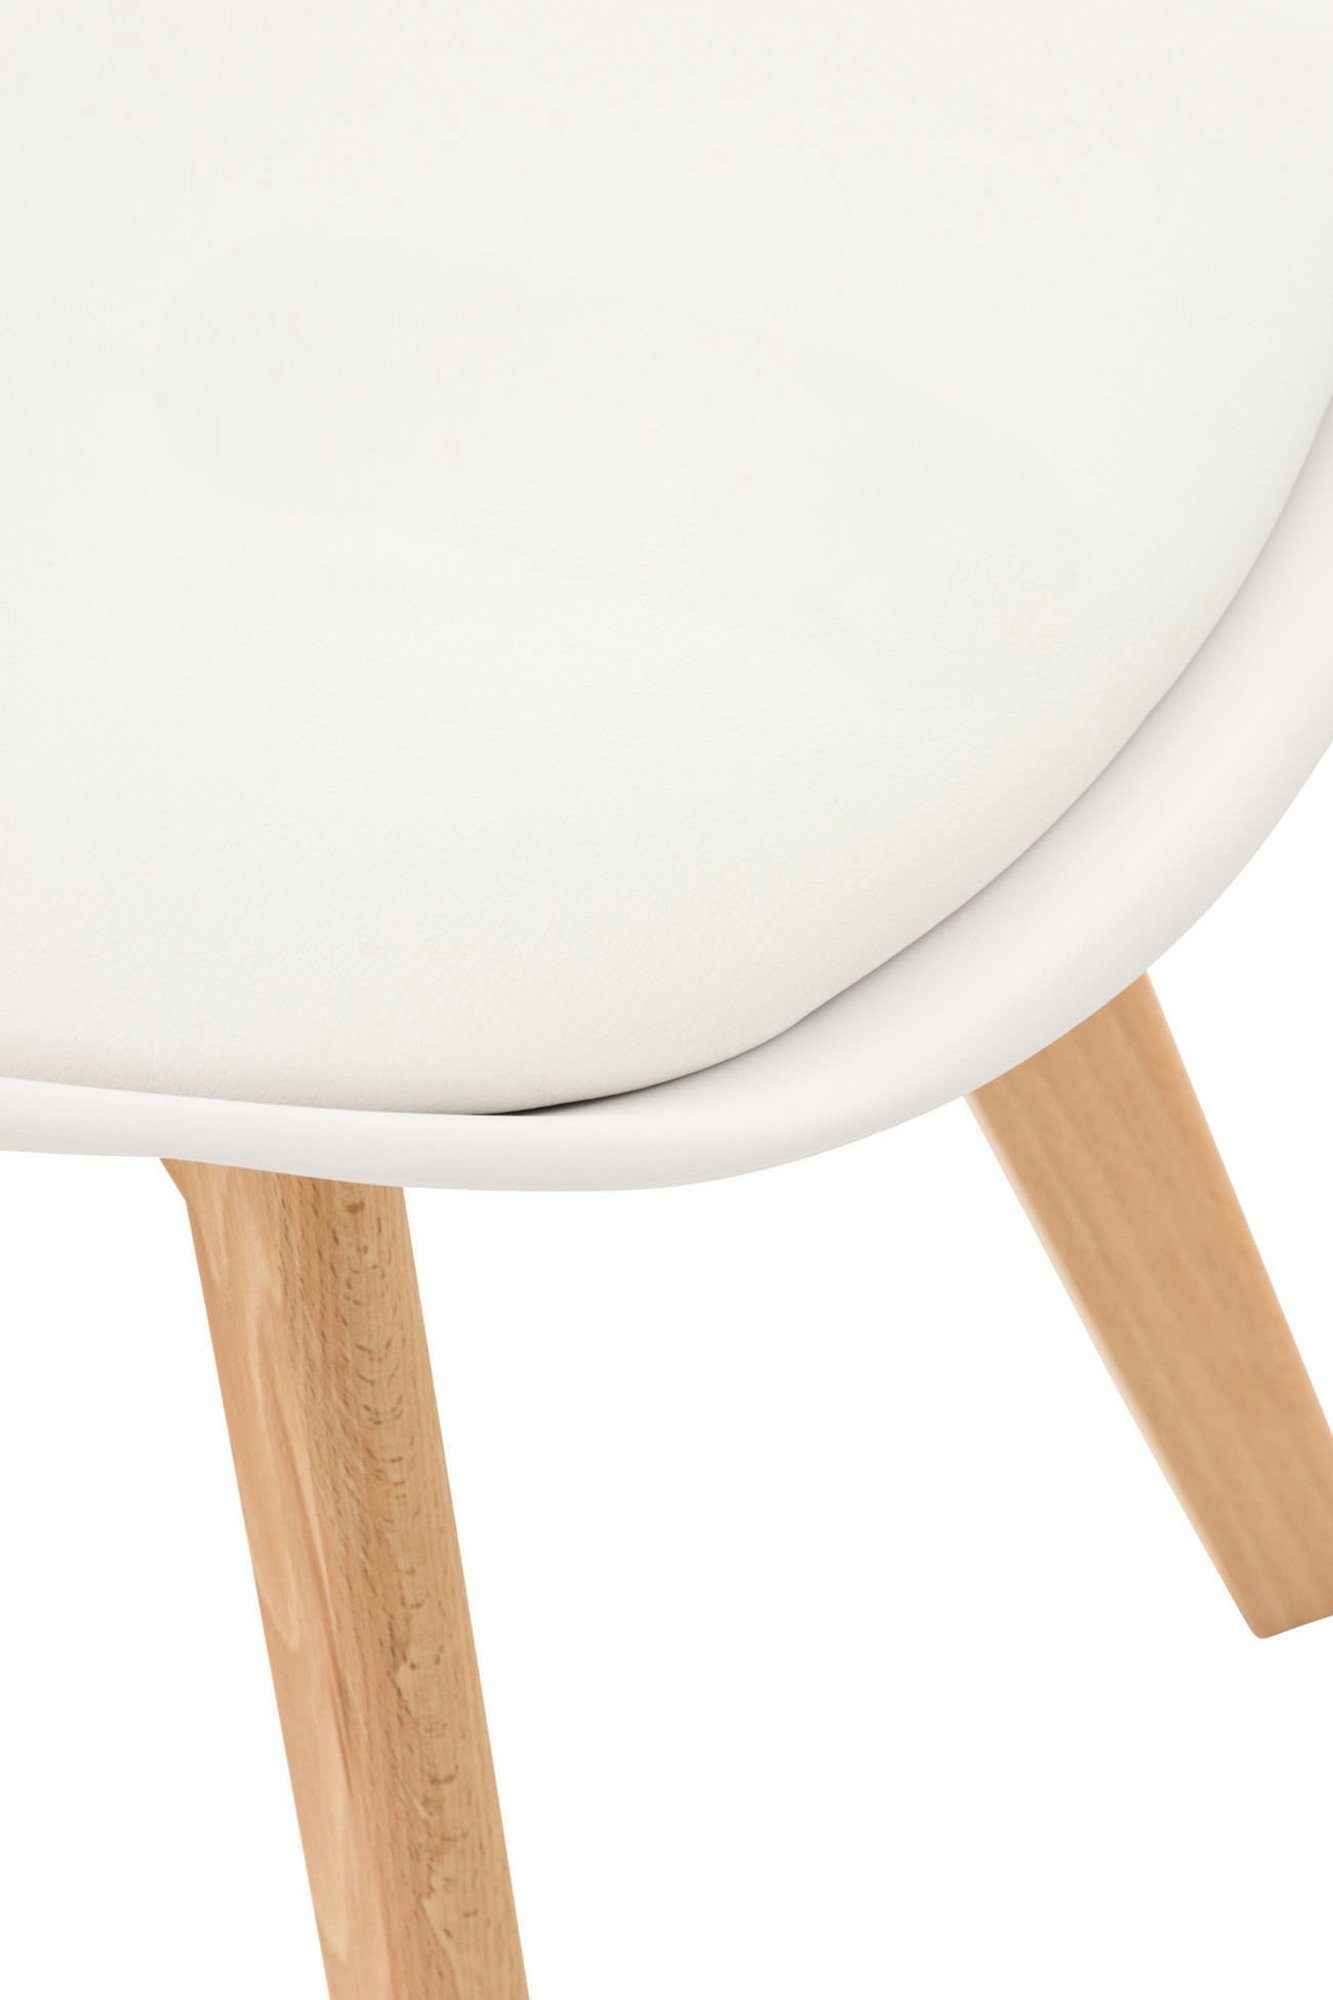 Liborg, Essgruppe CLP und Tisch mit 4 Sitzpolster, Stühle Buchenholz natura/weiß